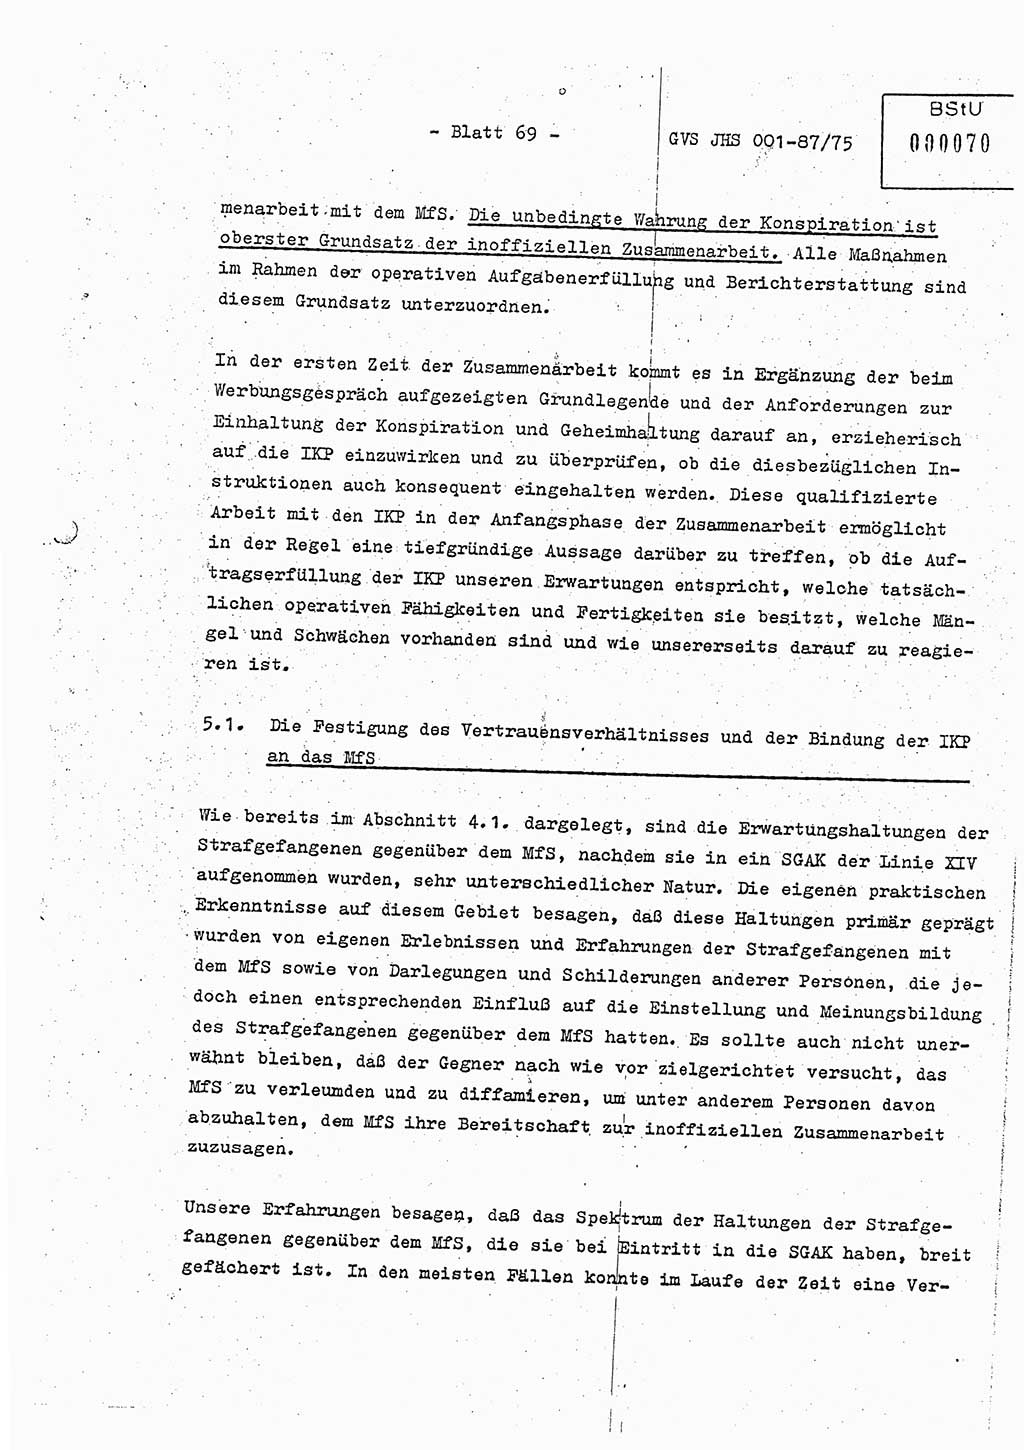 Diplomarbeit Hauptmann Volkmar Heinz (Abt. ⅩⅣ), Oberleutnant Lothar Rüdiger (BV Lpz. Abt. Ⅺ), Ministerium für Staatssicherheit (MfS) [Deutsche Demokratische Republik (DDR)], Juristische Hochschule (JHS), Geheime Verschlußsache (GVS) o001-87/75, Potsdam 1975, Seite 69 (Dipl.-Arb. MfS DDR JHS GVS o001-87/75 1975, S. 69)